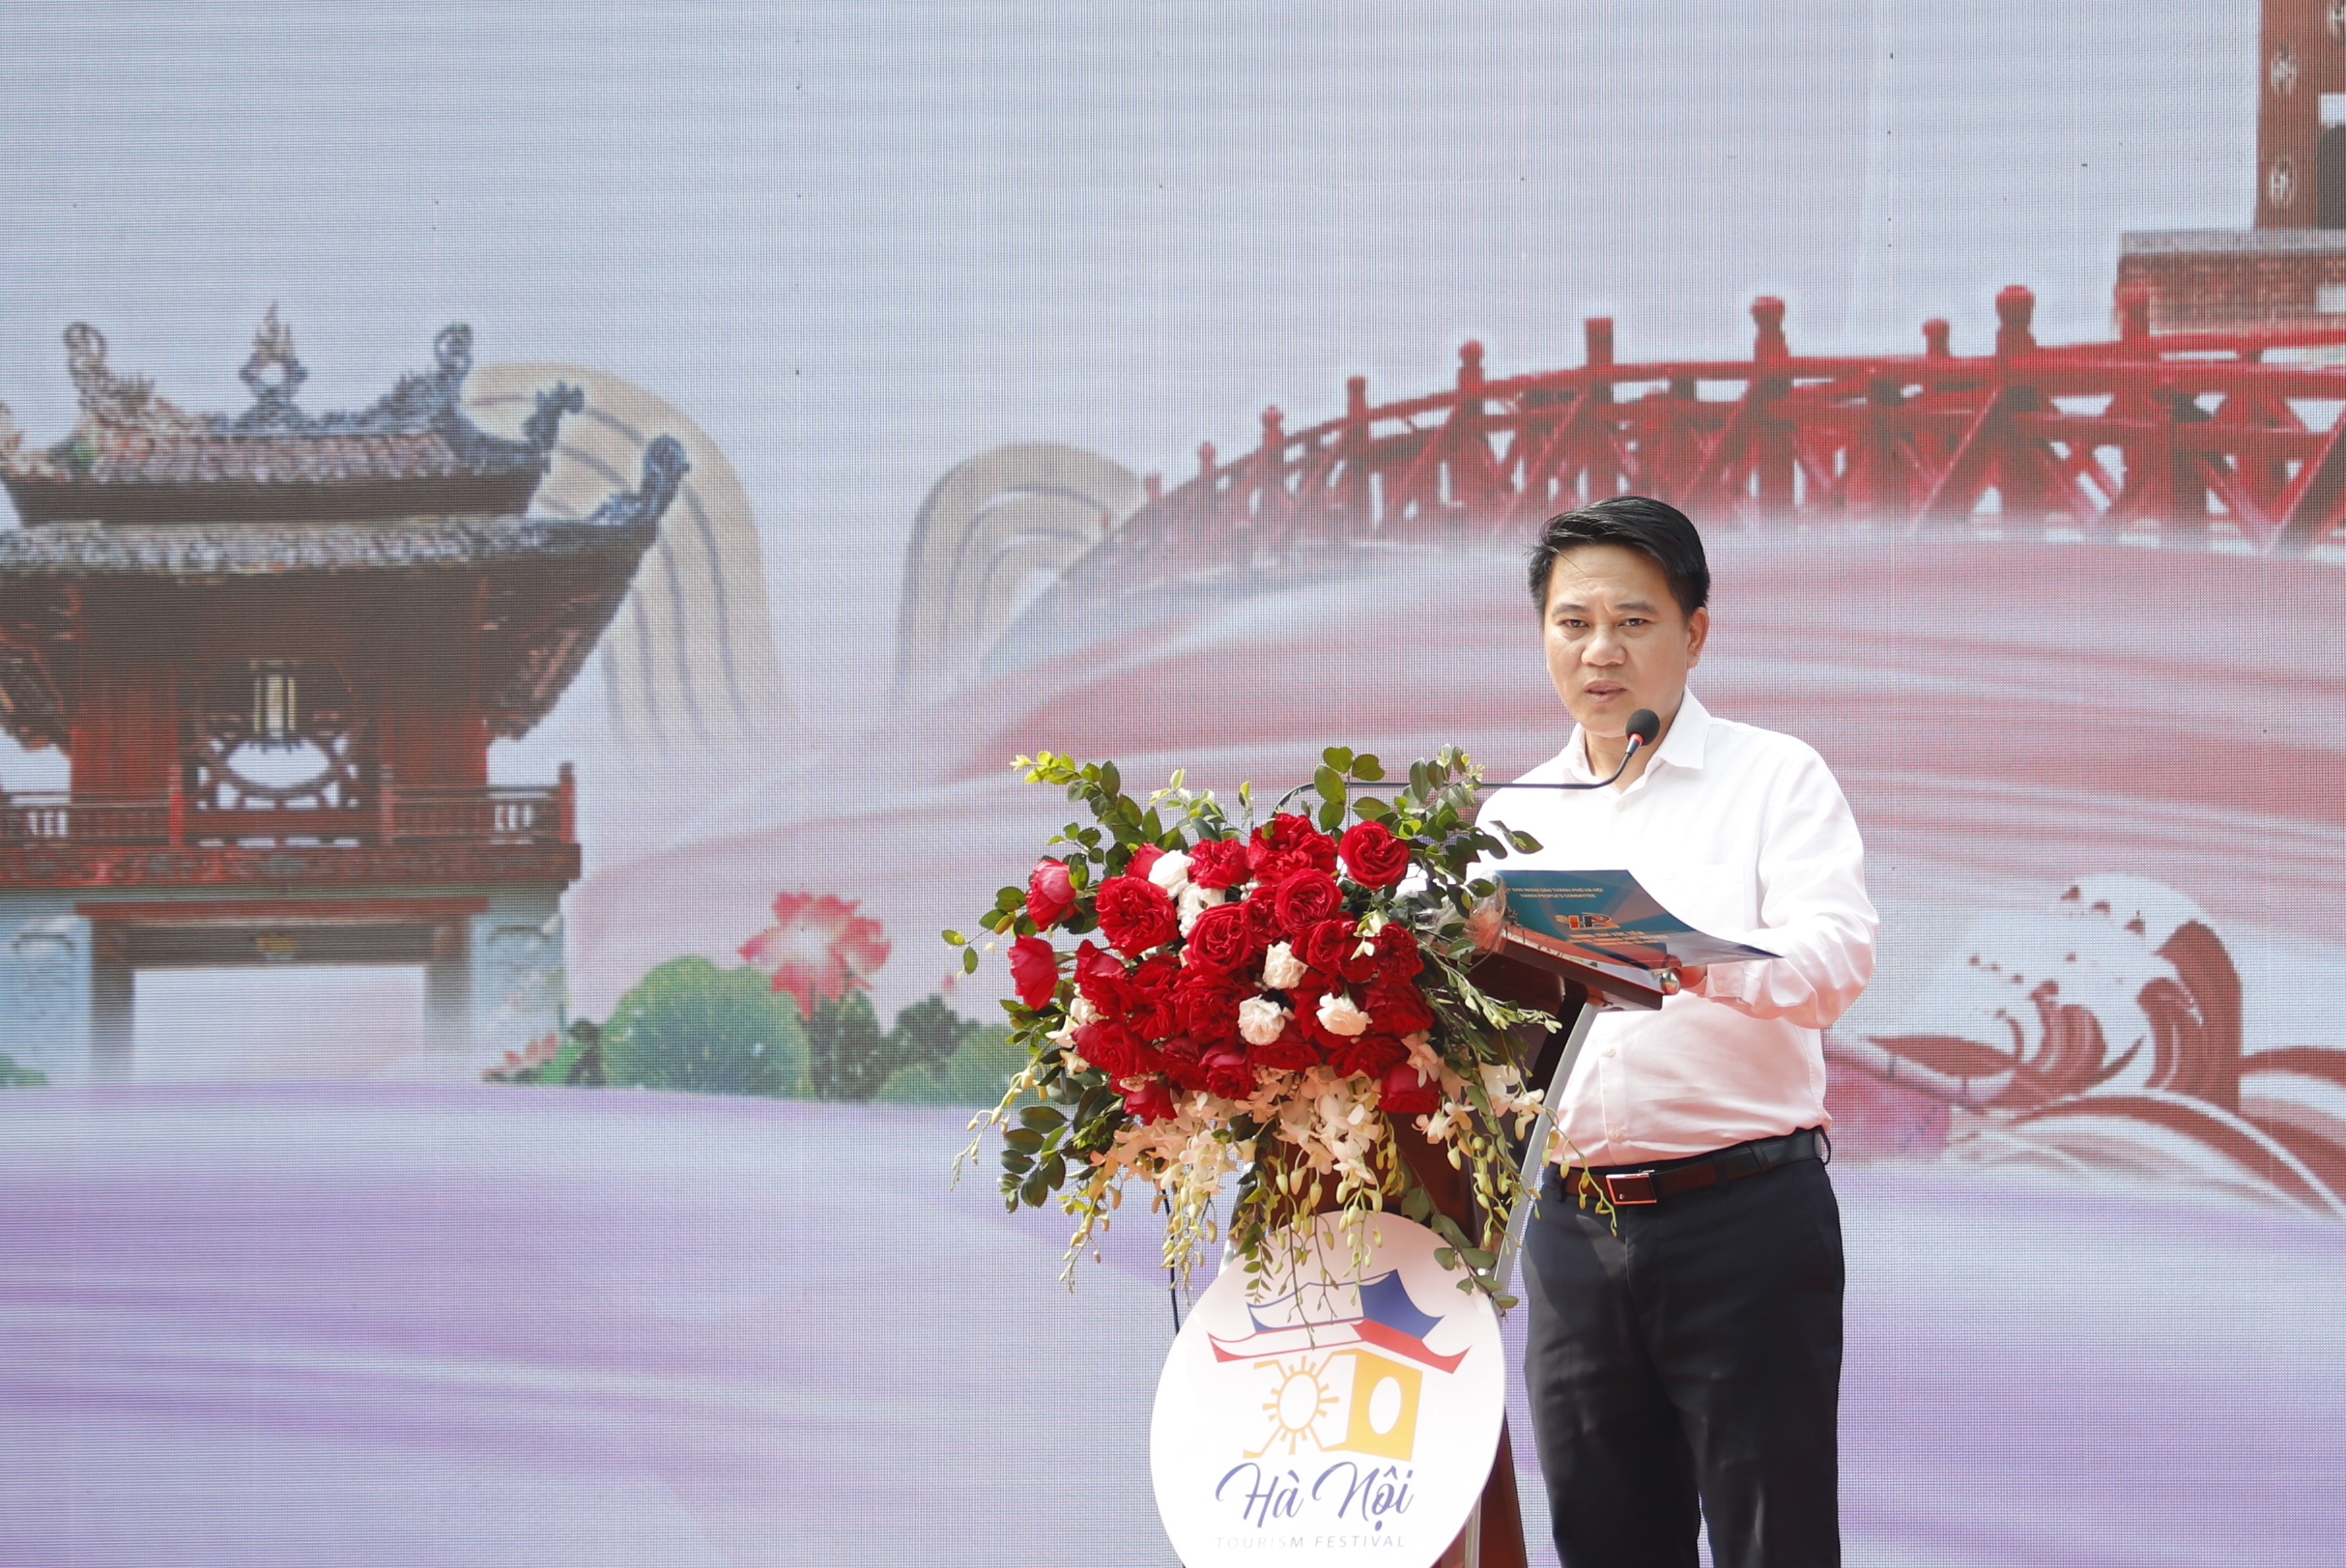 Khai thác các yếu tố đặc trưng của văn hóa Hà Nội để phát triển các sản phẩm du lịch đặc thù, hấp dẫn - Ảnh 3.